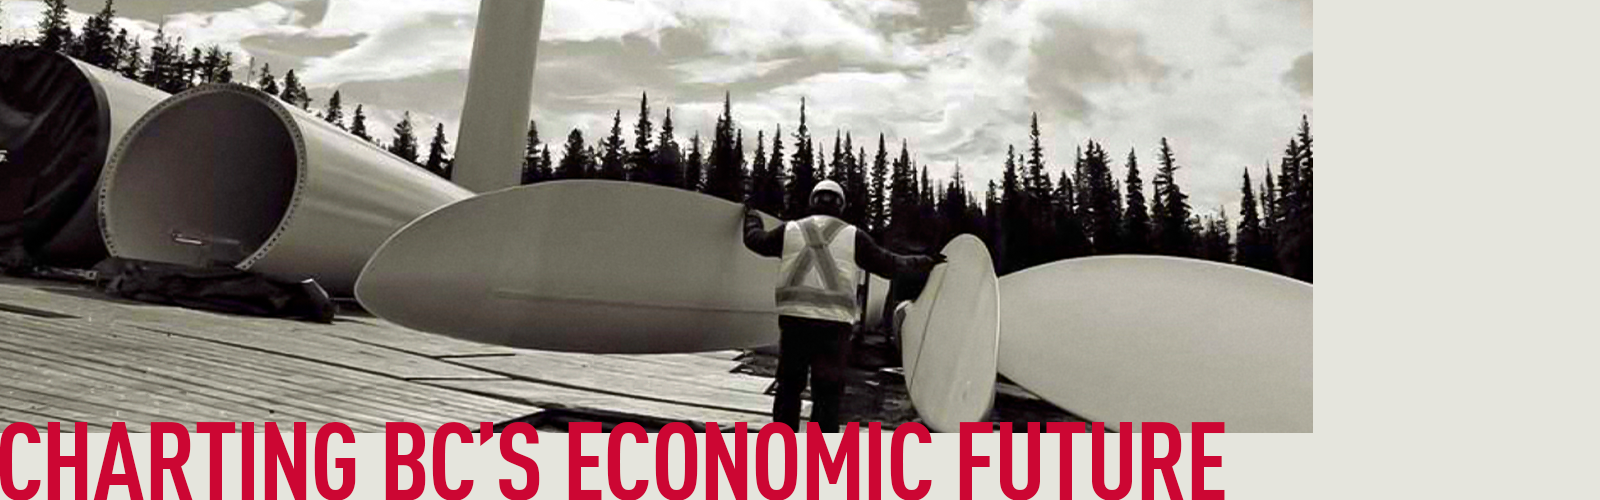 Charting BC's Economic Future